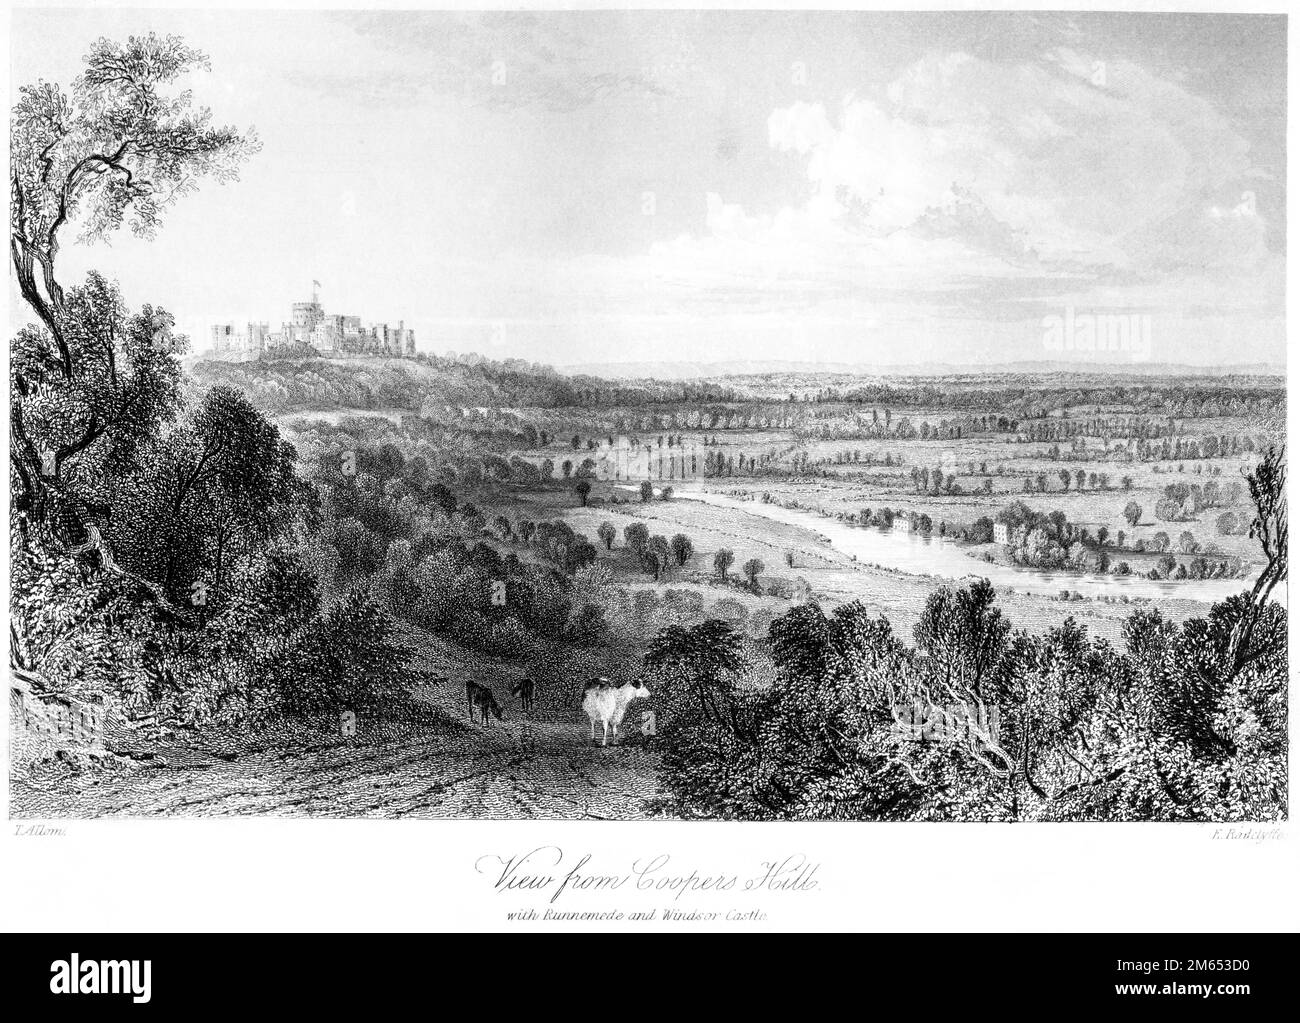 Eine Gravur von A View von Coopers Hill., Surrey mit Runnemede und Windsor Castle, die in hoher Auflösung gescannt wurde, aus einem 1850 gedruckten Buch. Stockfoto